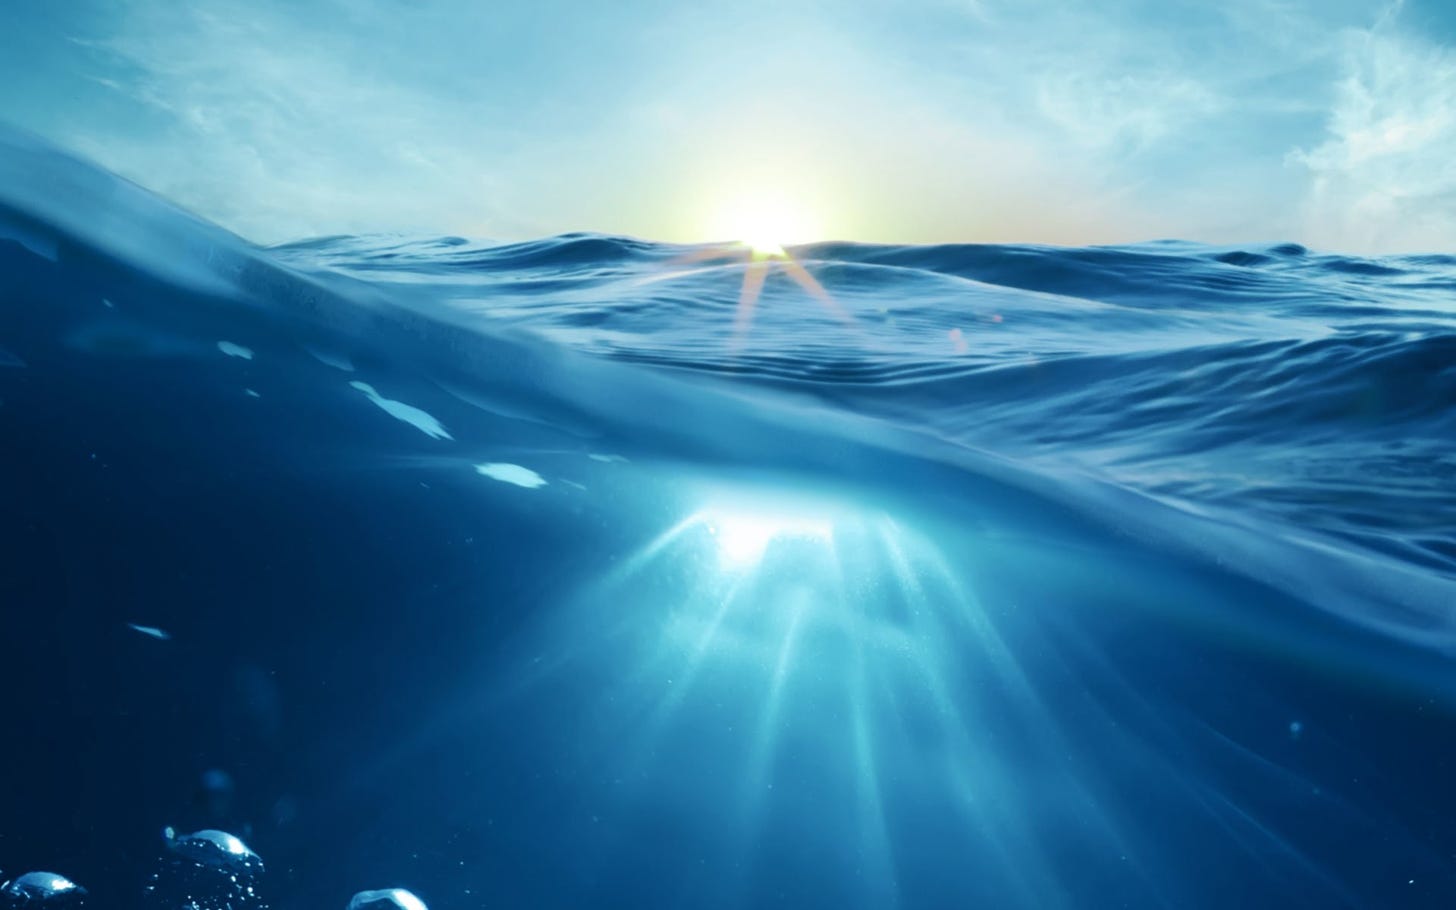 Imagem é uma fotografia capturada dentro da água, com parte da lente submersa registrando o movimento da água, bolhas e raios de luz penetrando nela, e outra parte registrando marolas com o céu e o sol ao fundo.